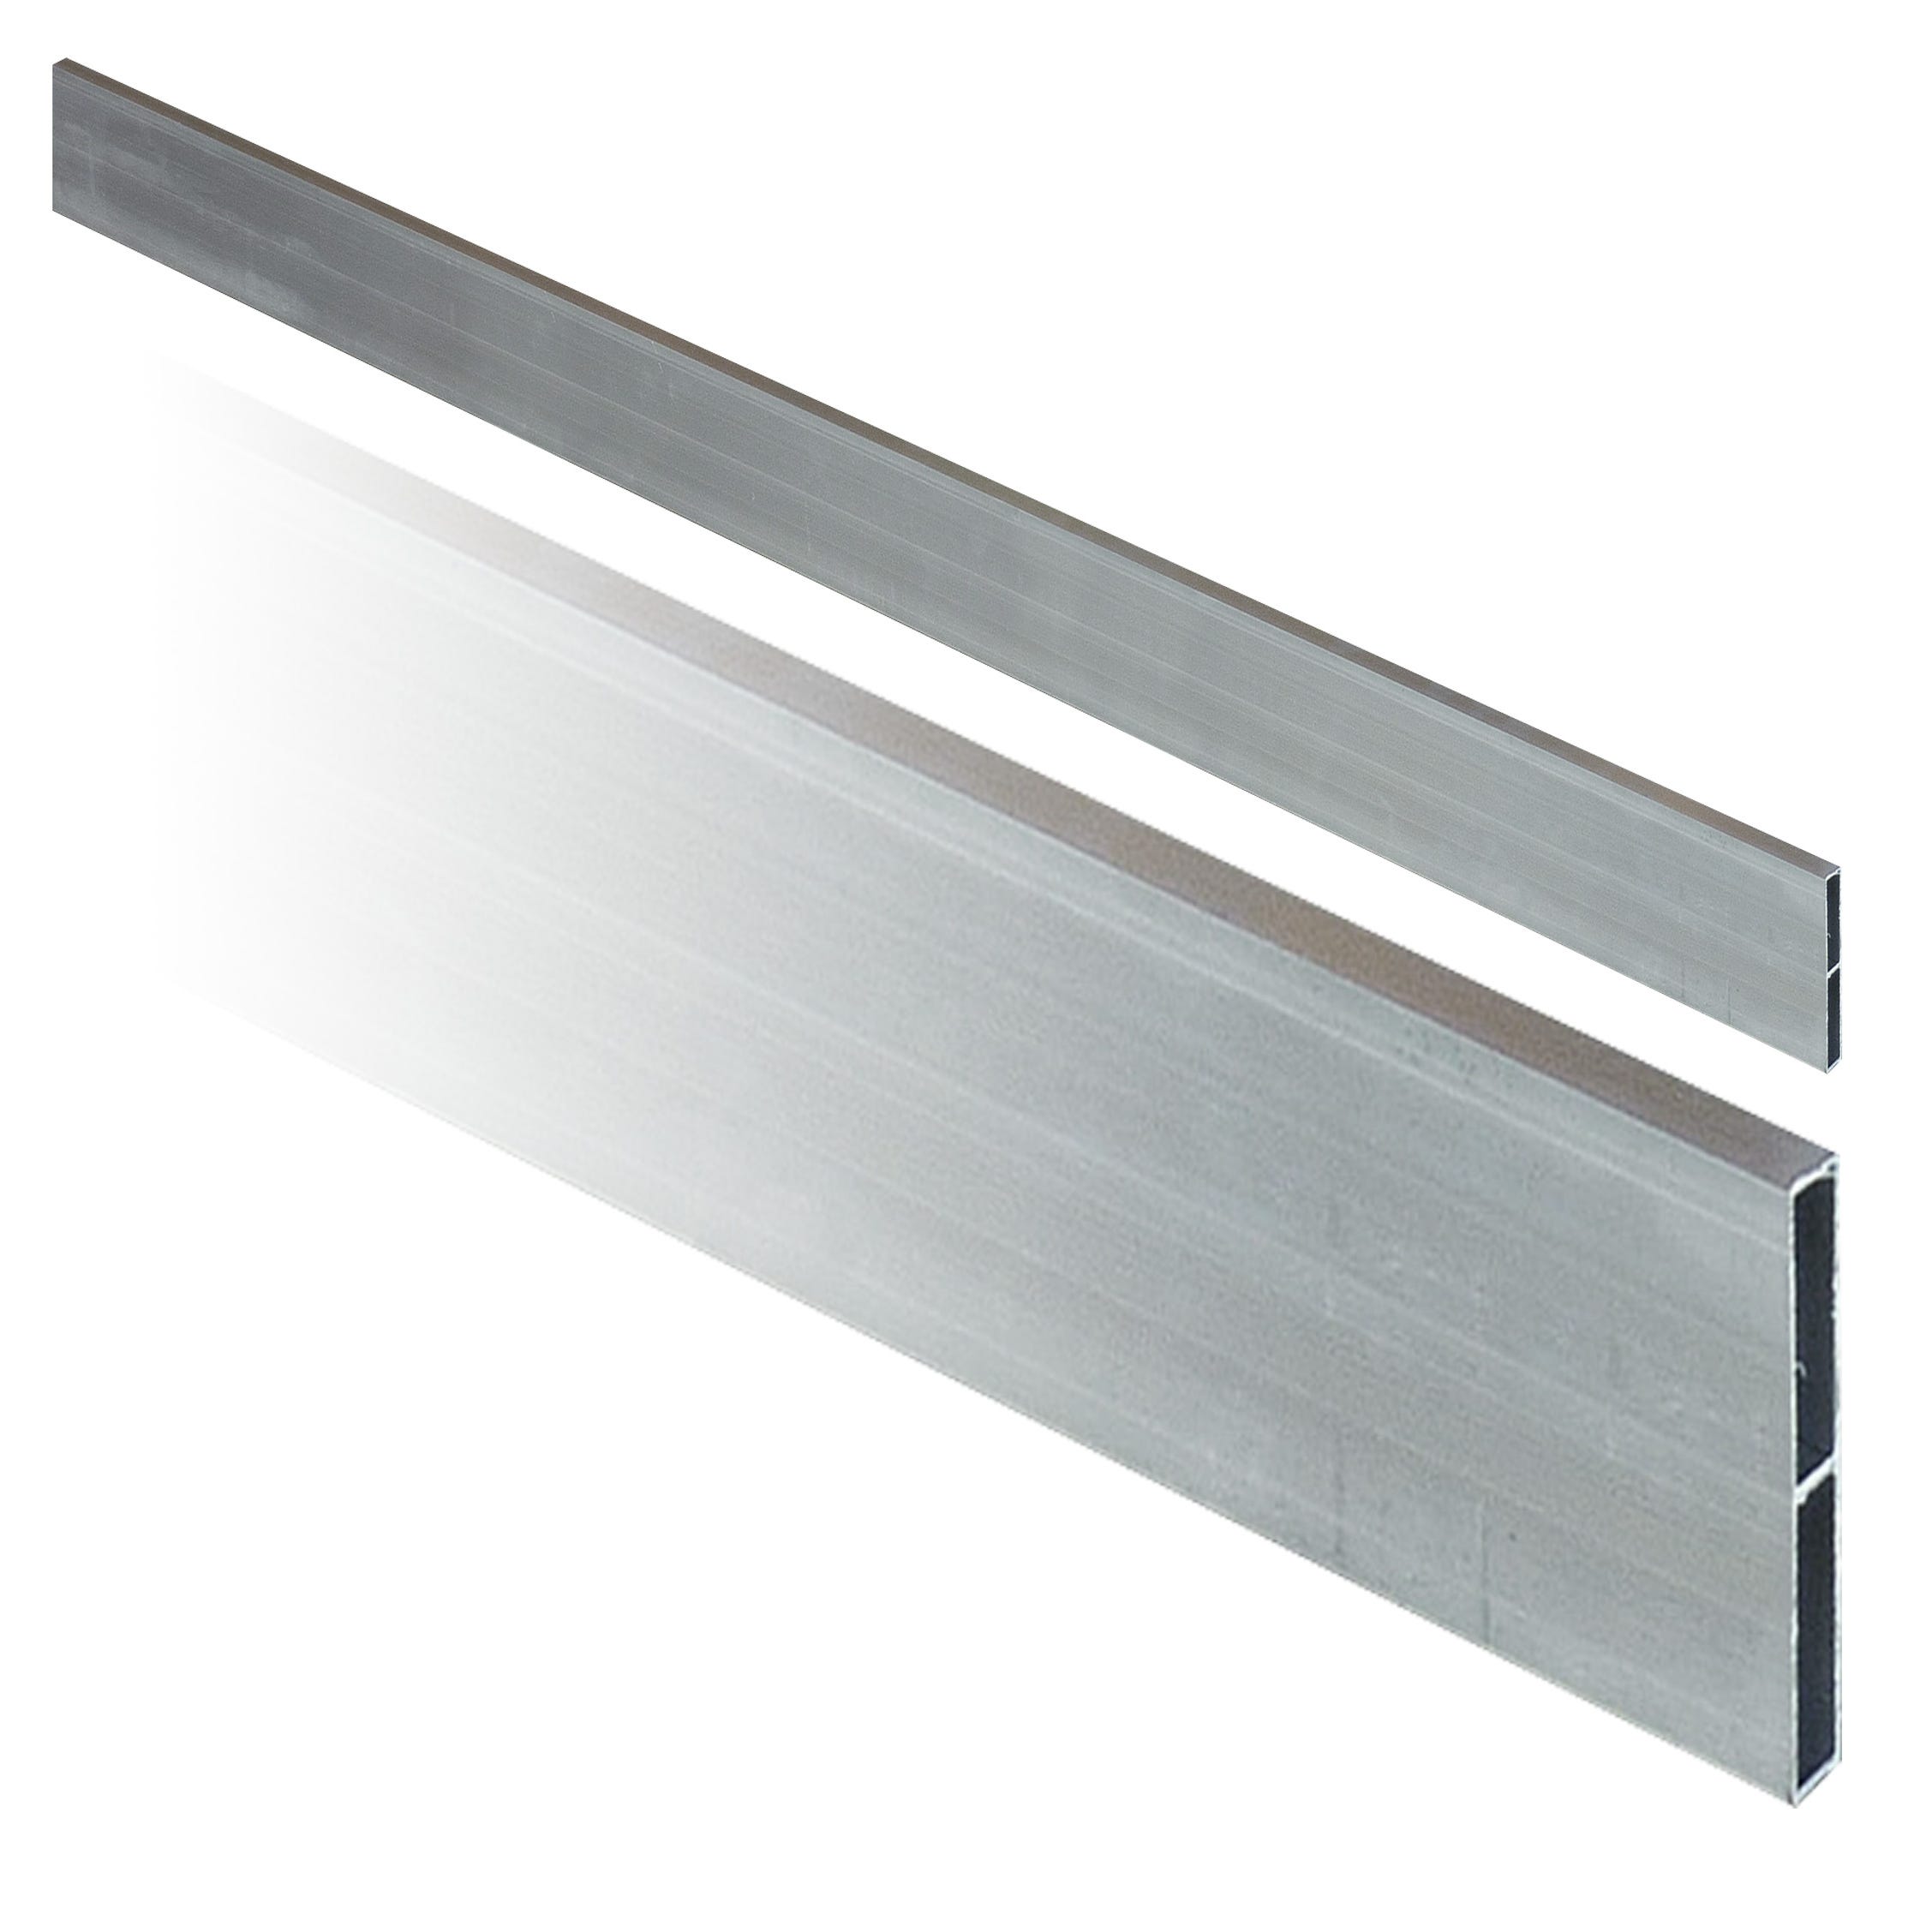 Règle de maçon aluminium gris 3m x 10cm